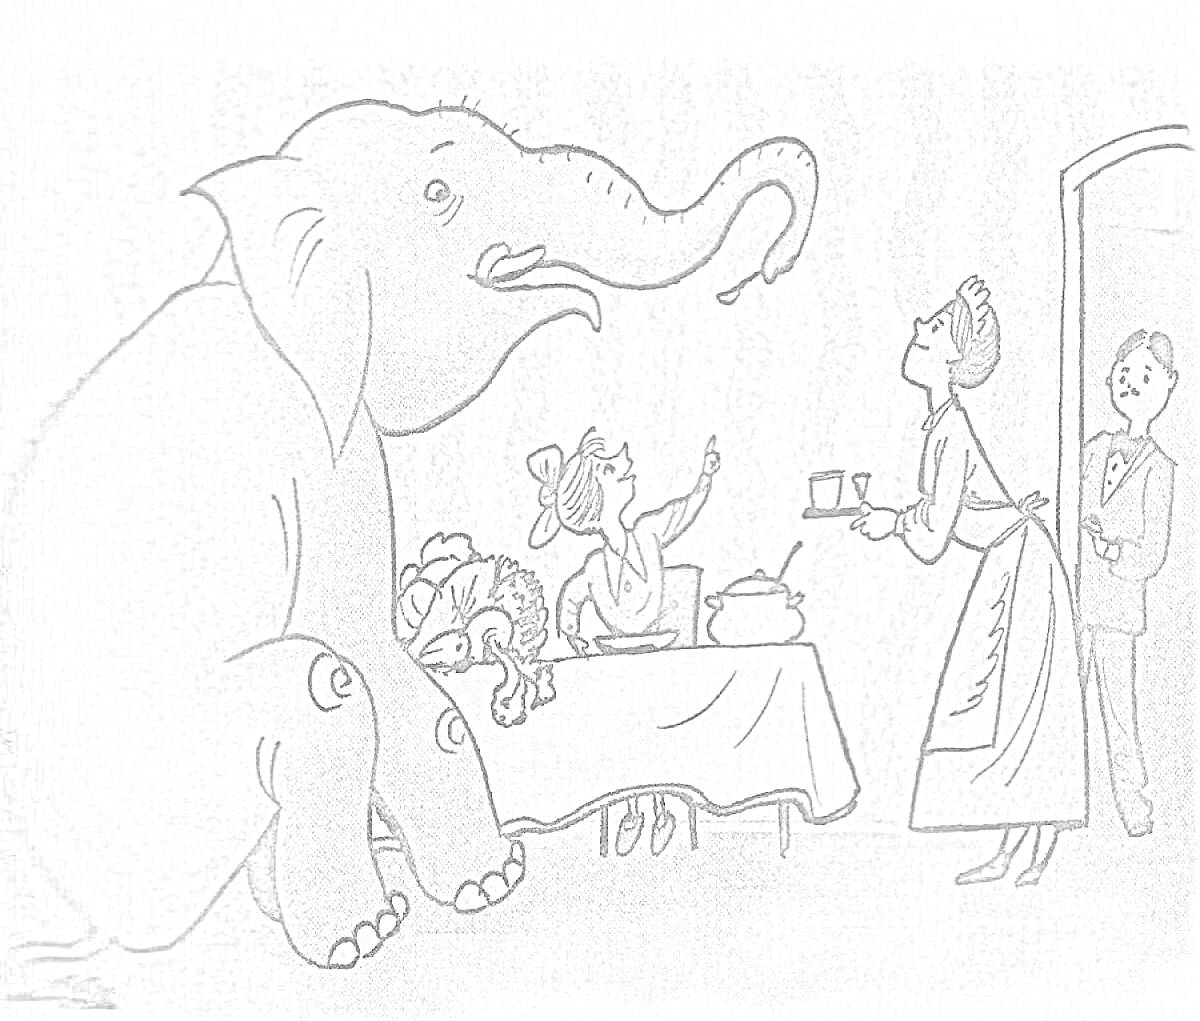 Слон в комнате, мальчик за столом, женщина с чайником и подносом, слуга у двери